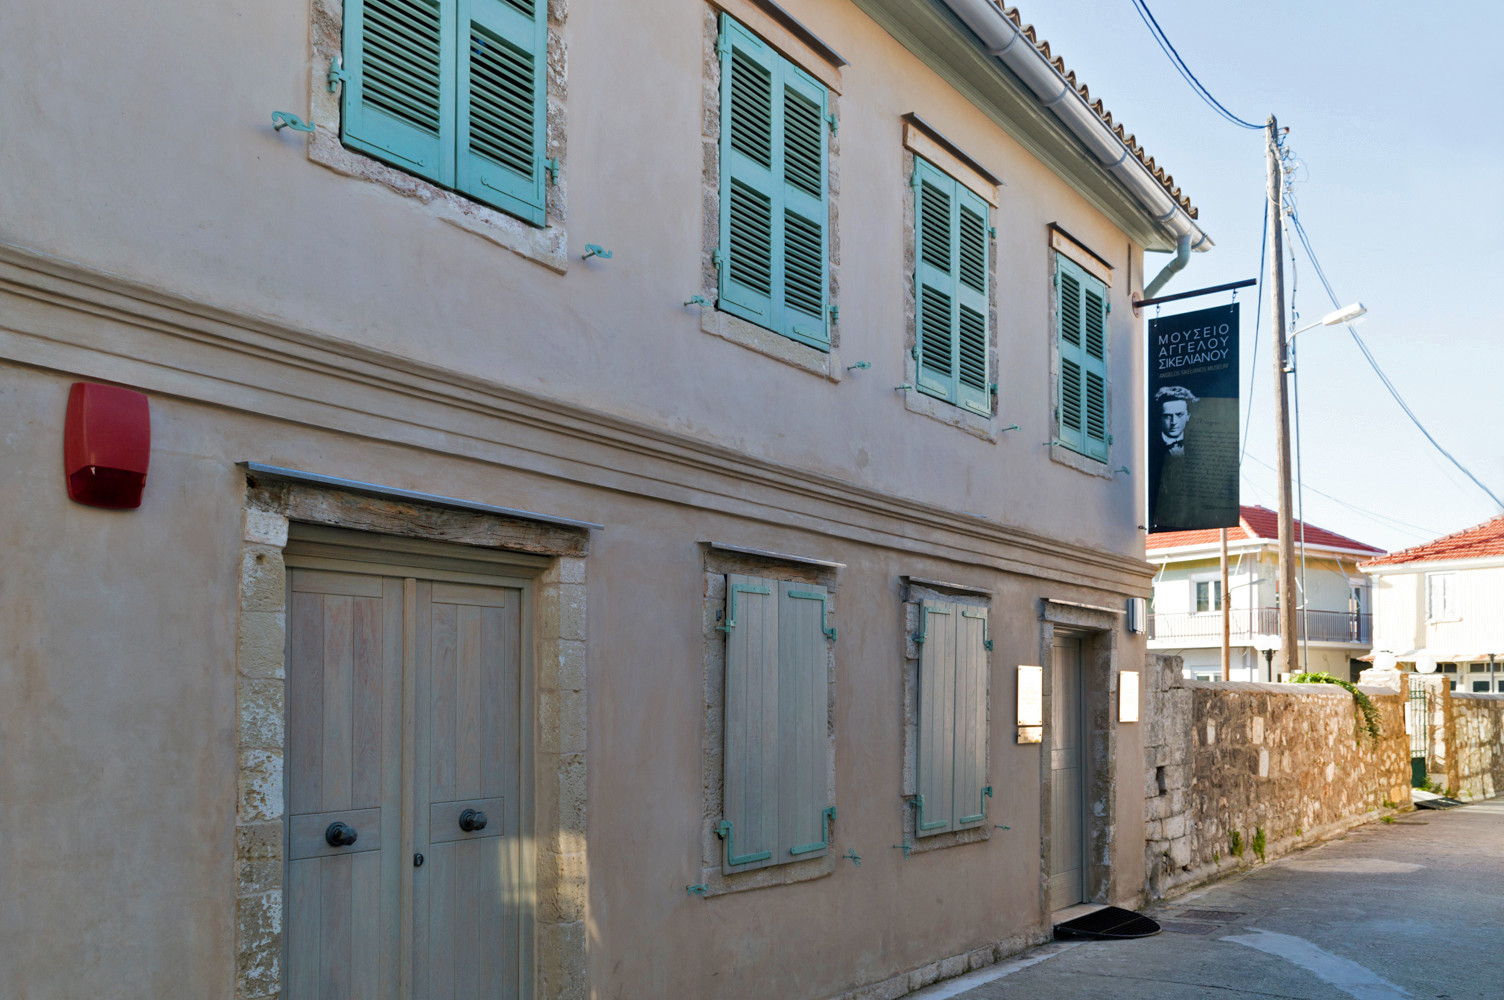 Μουσείο Άγγελου Σικελιανού στη Λευκάδα | Βόλτα στα στενά της πόλης